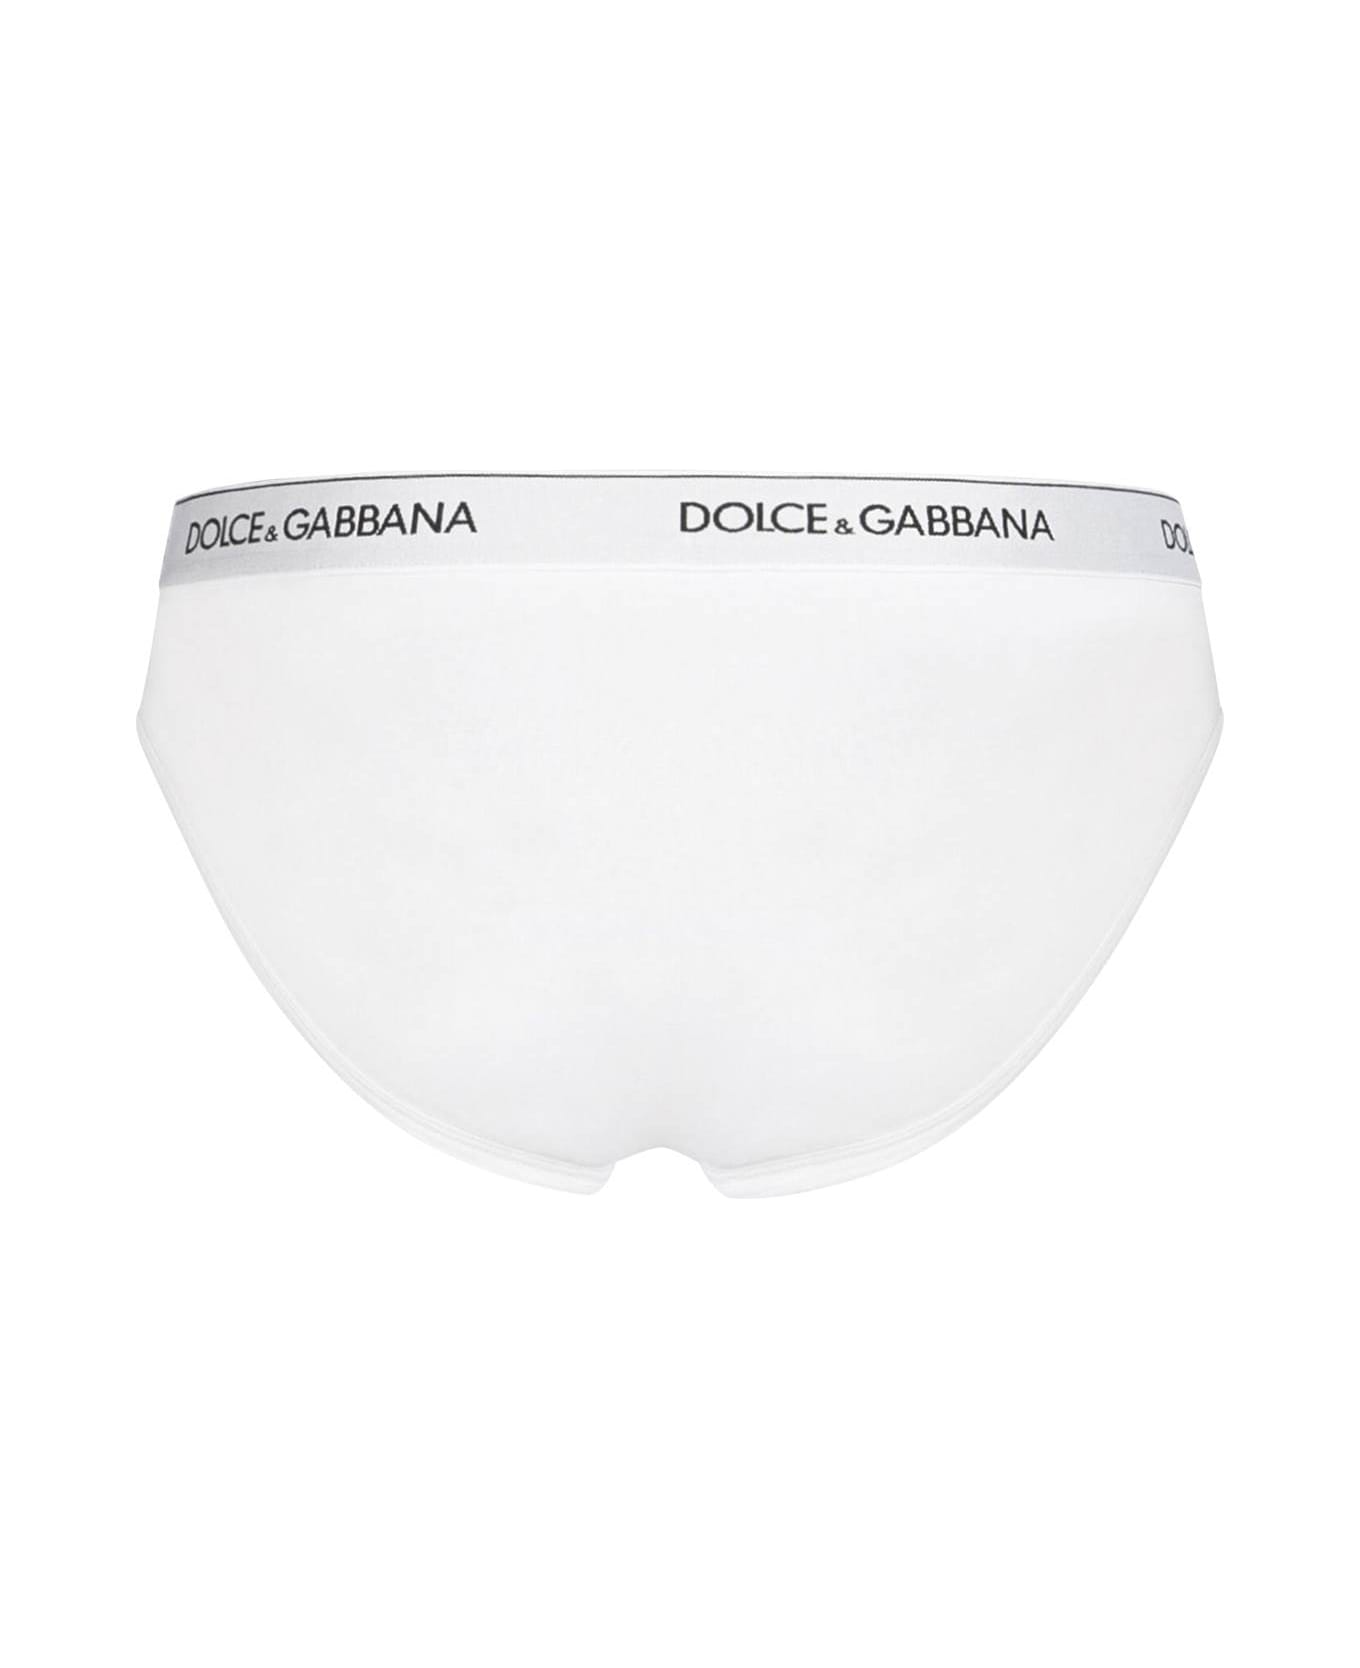 Dolce & Gabbana White Cotton Briefs - White ショーツ